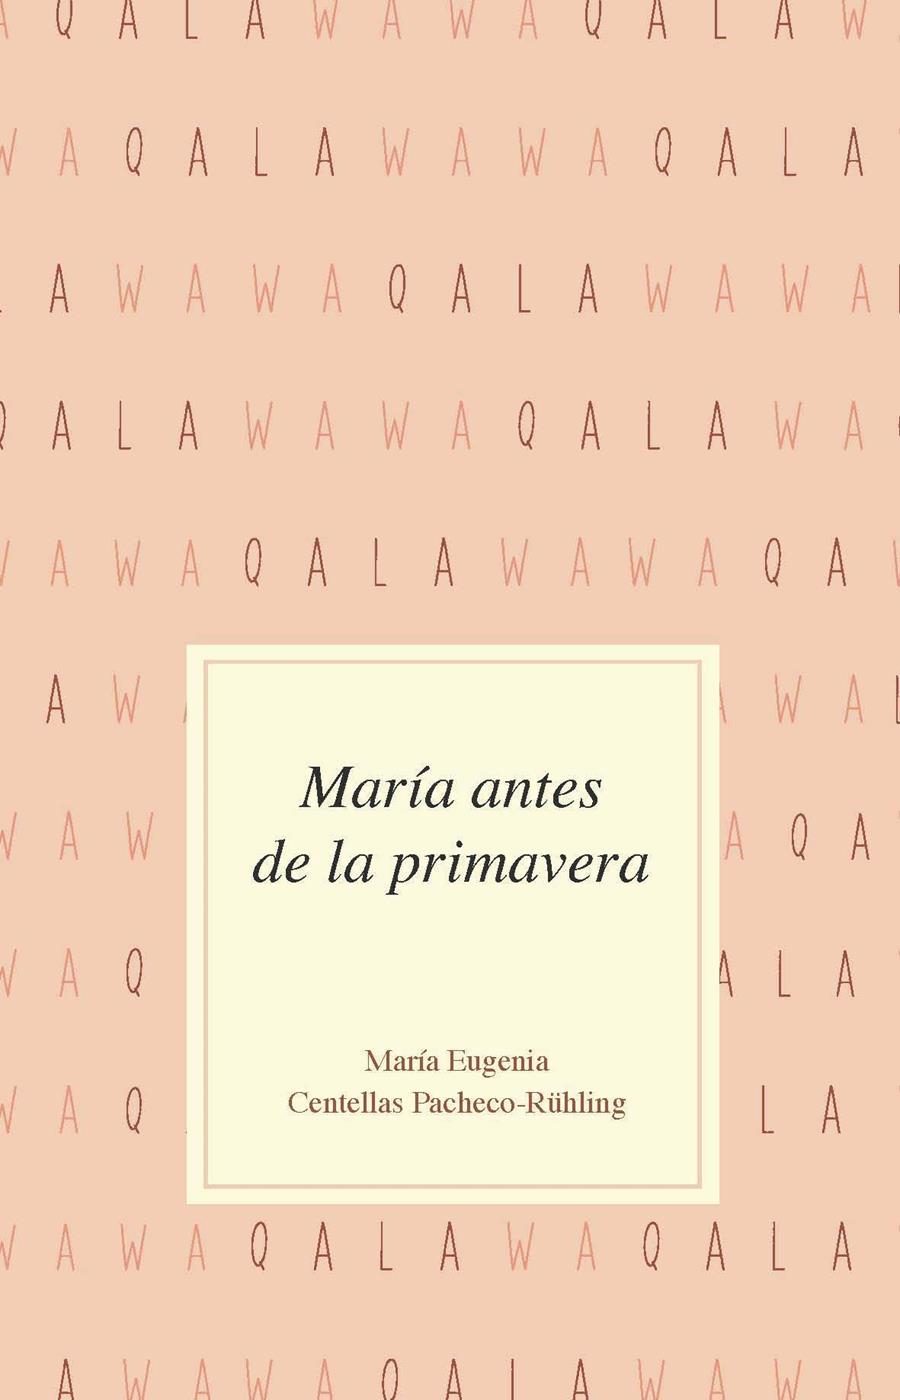 María antes de la primavera | Centellas Pacheco-Rühling, María Eugenia | Cooperativa autogestionària